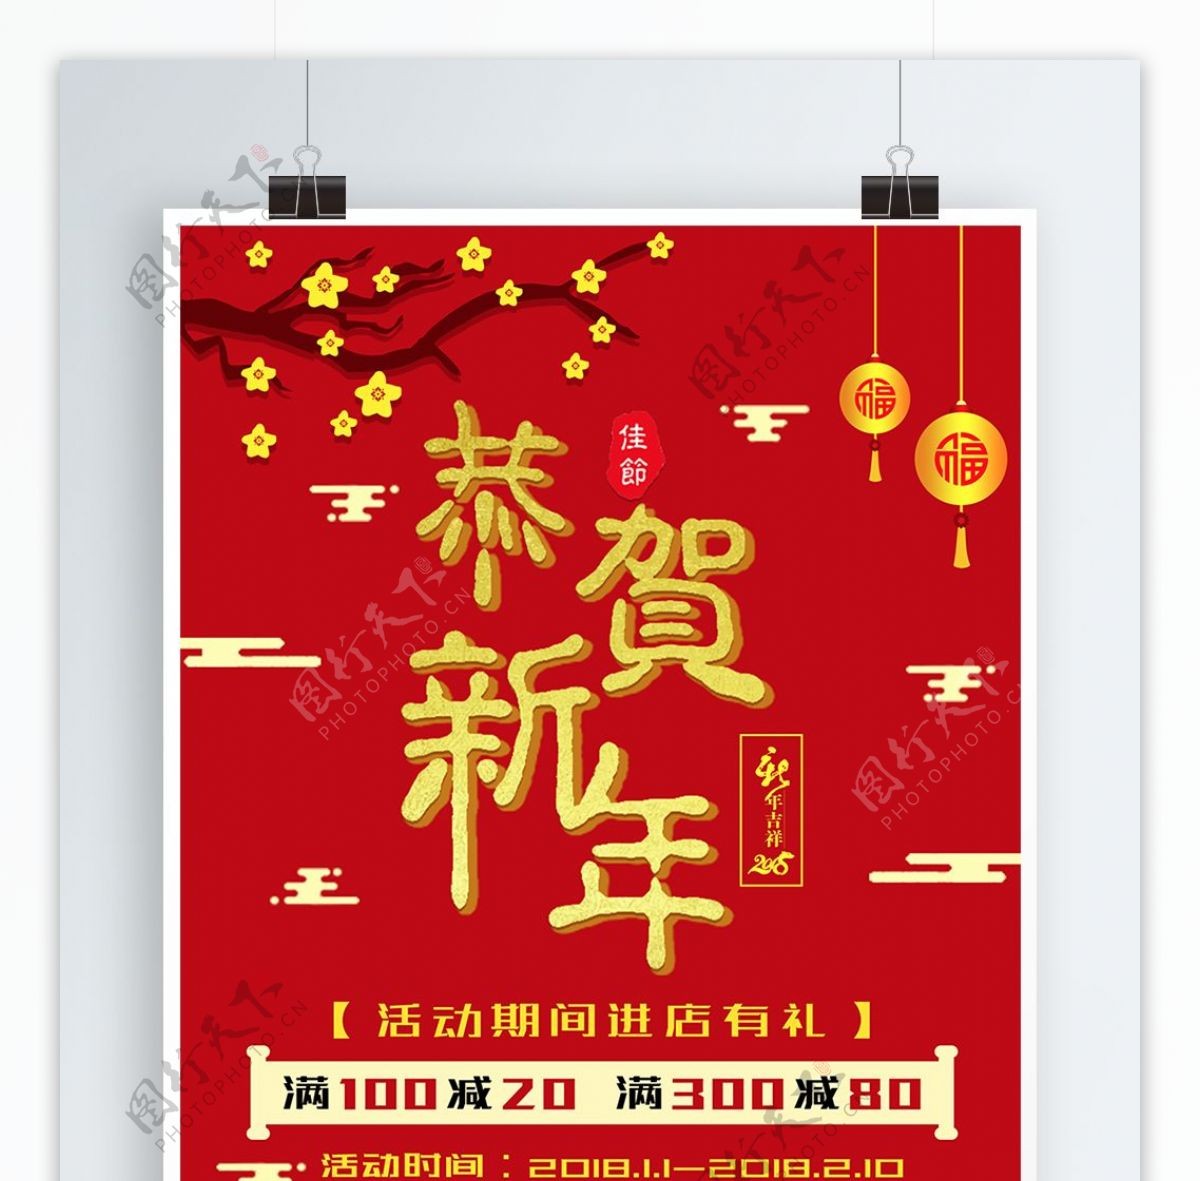 2018恭贺新年春节中国喜庆大气促销海报